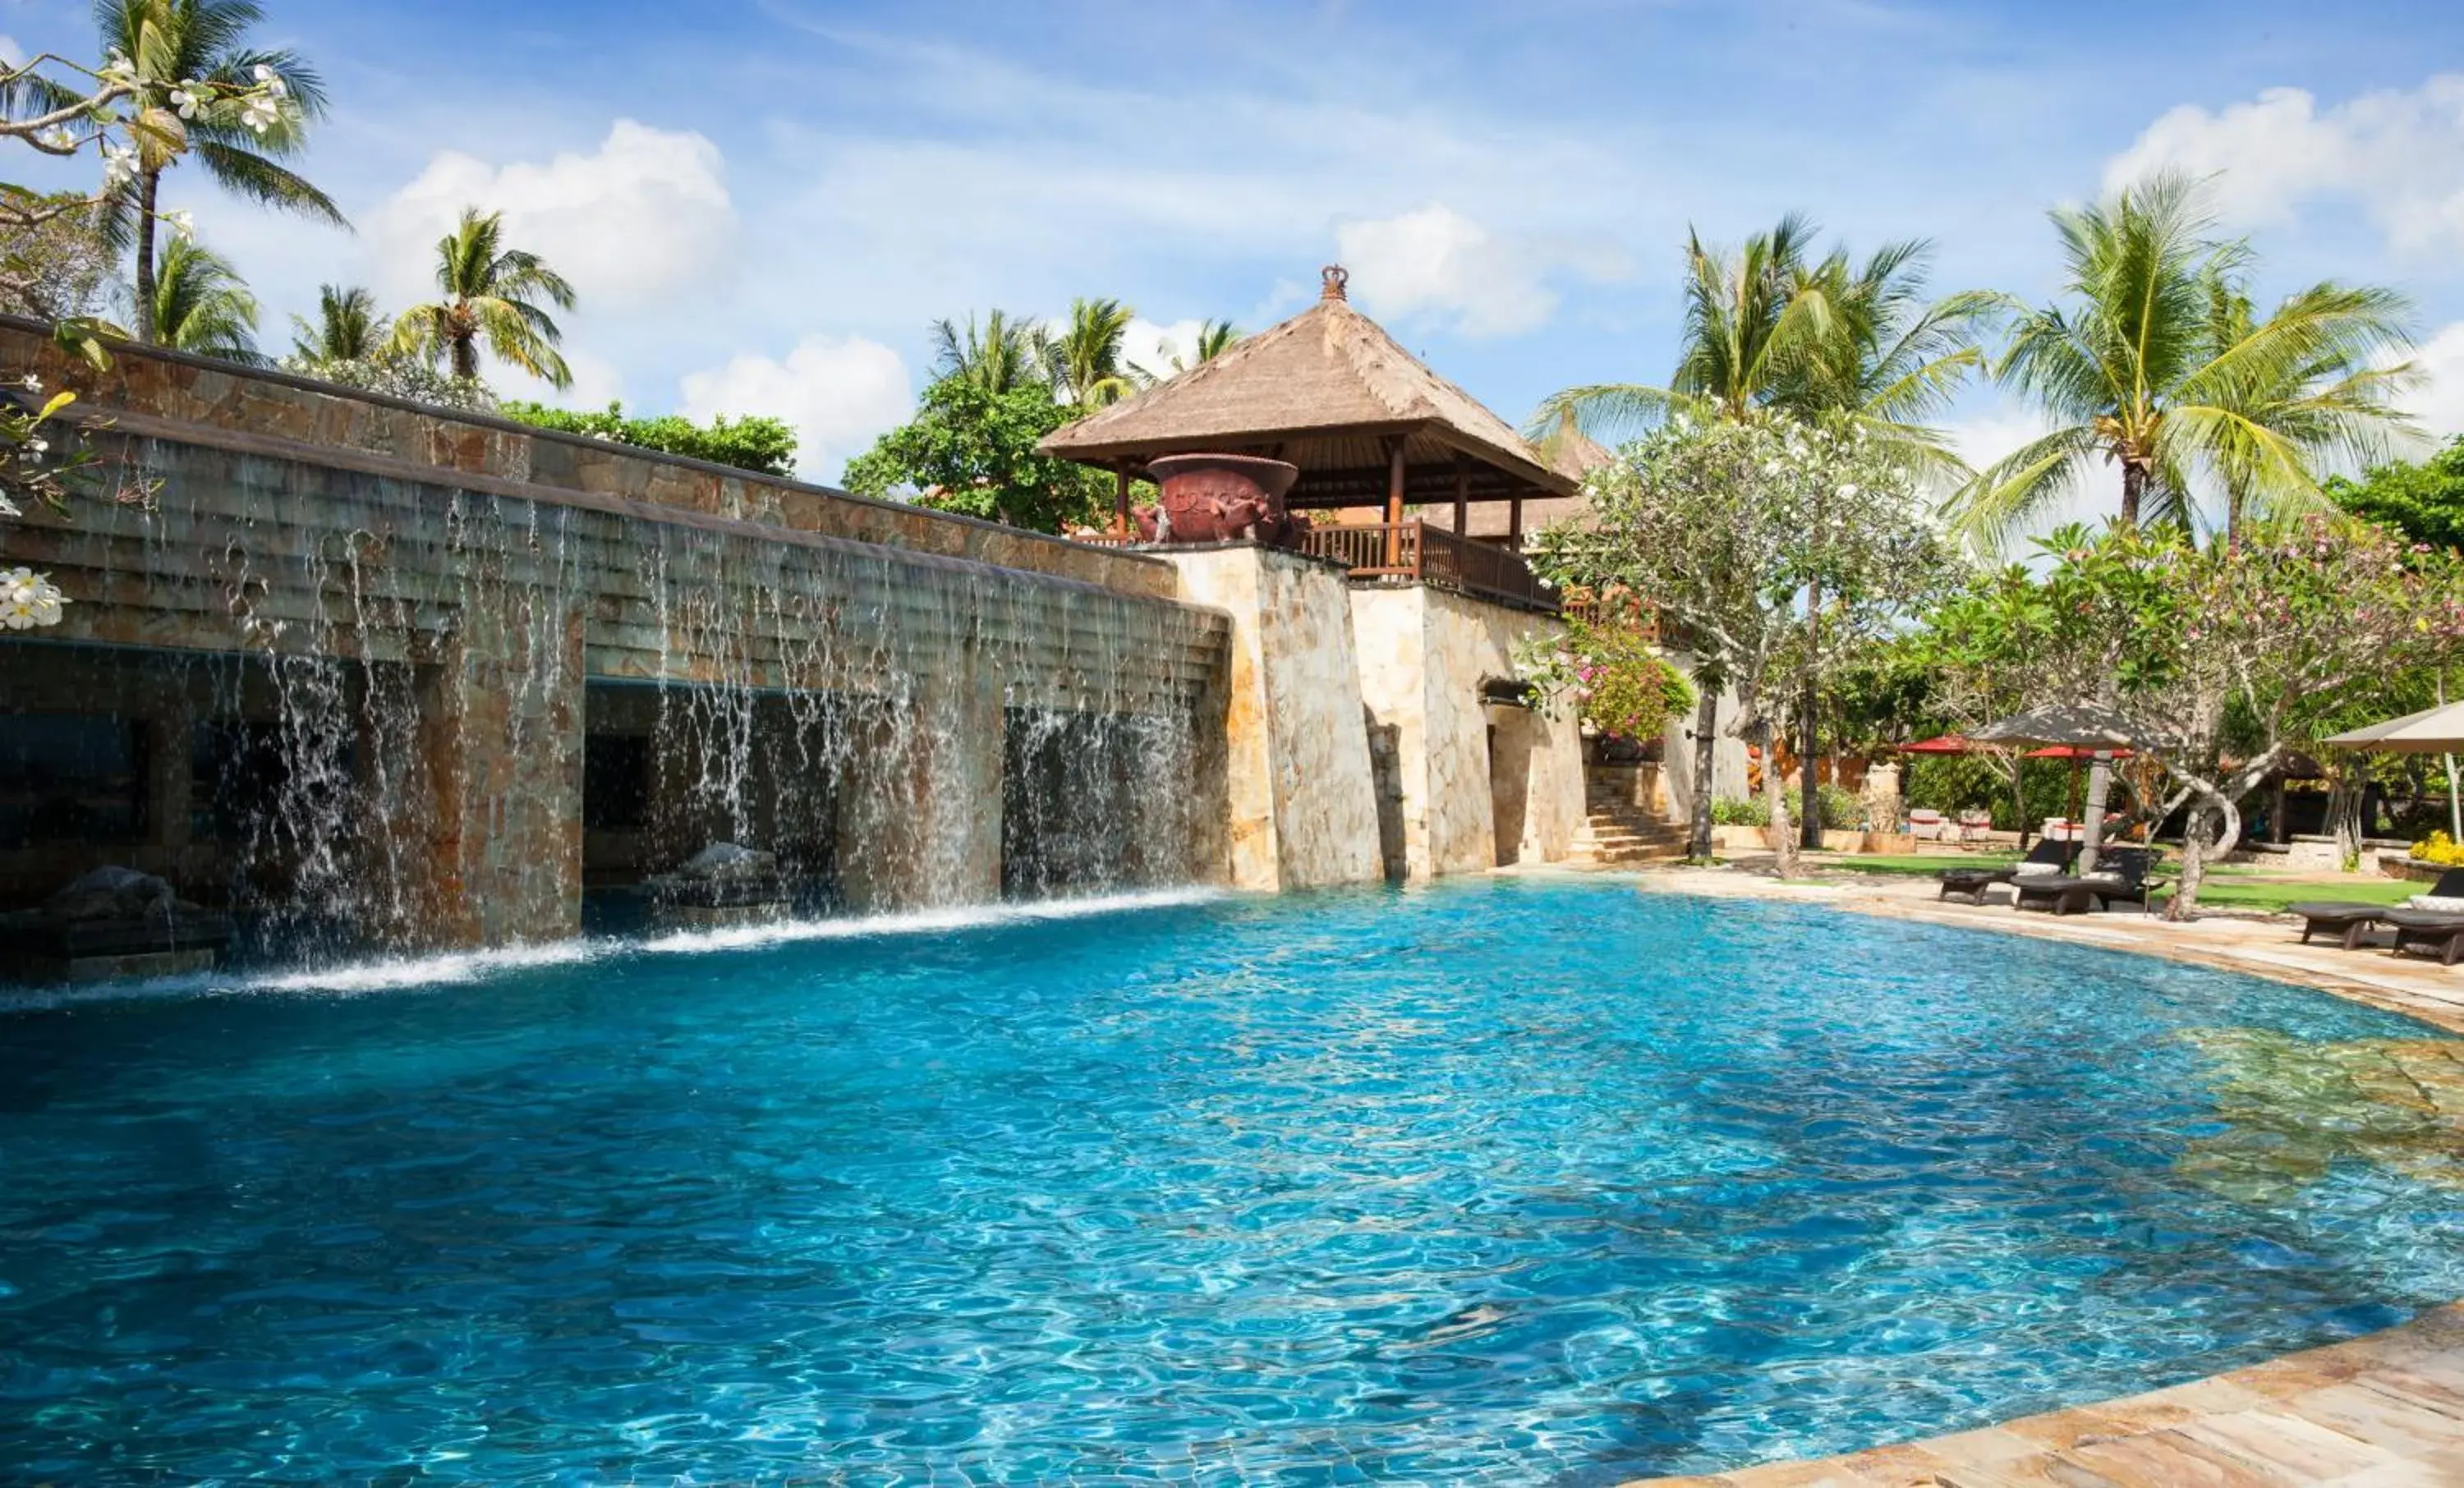 Swimming pool in AYANA Villas Bali